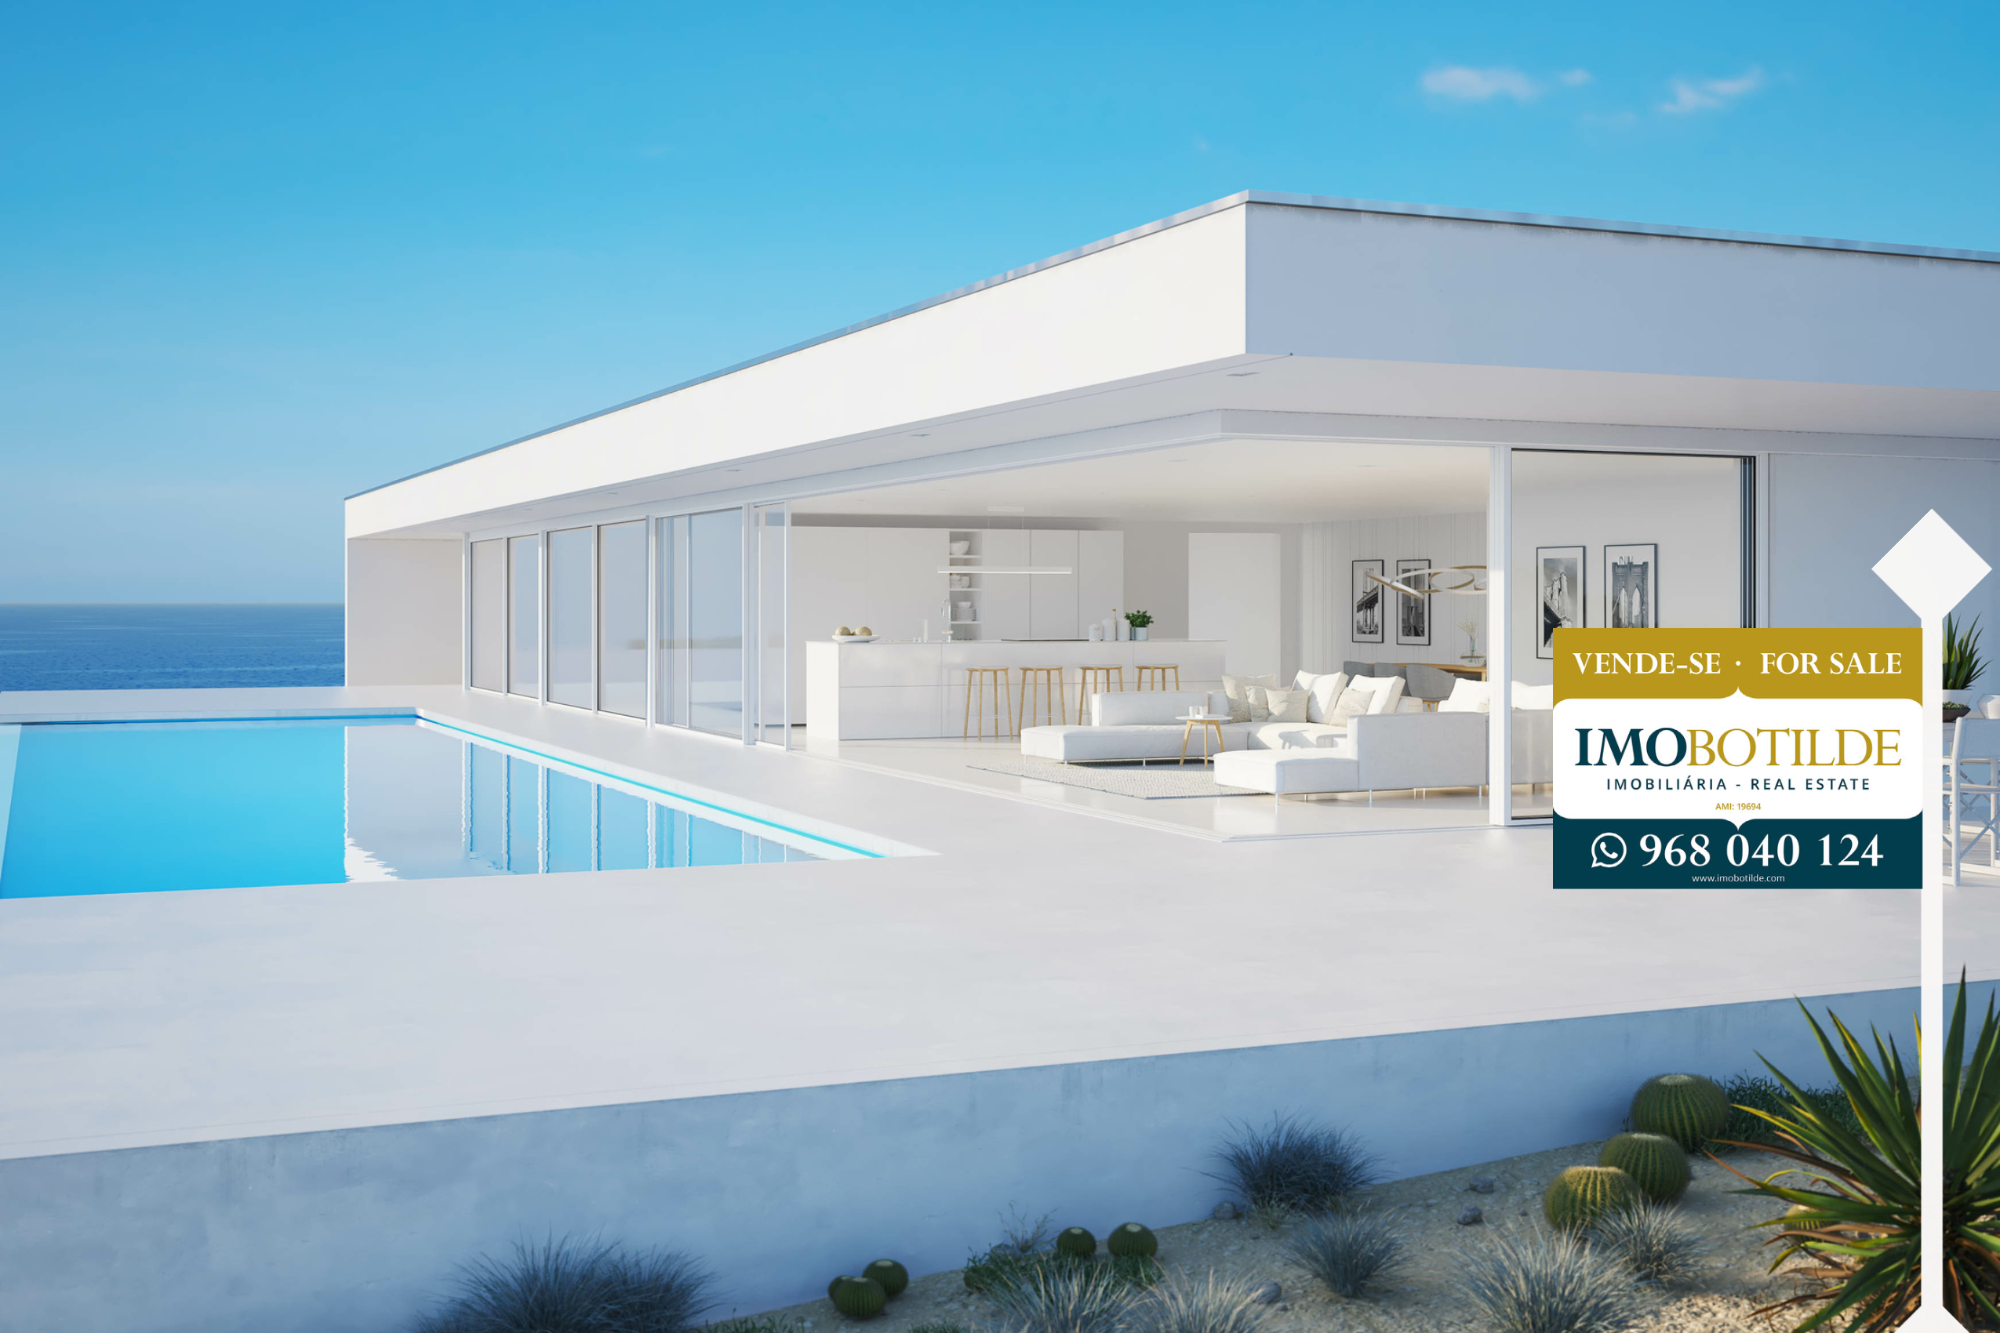 selling property in the Algarve